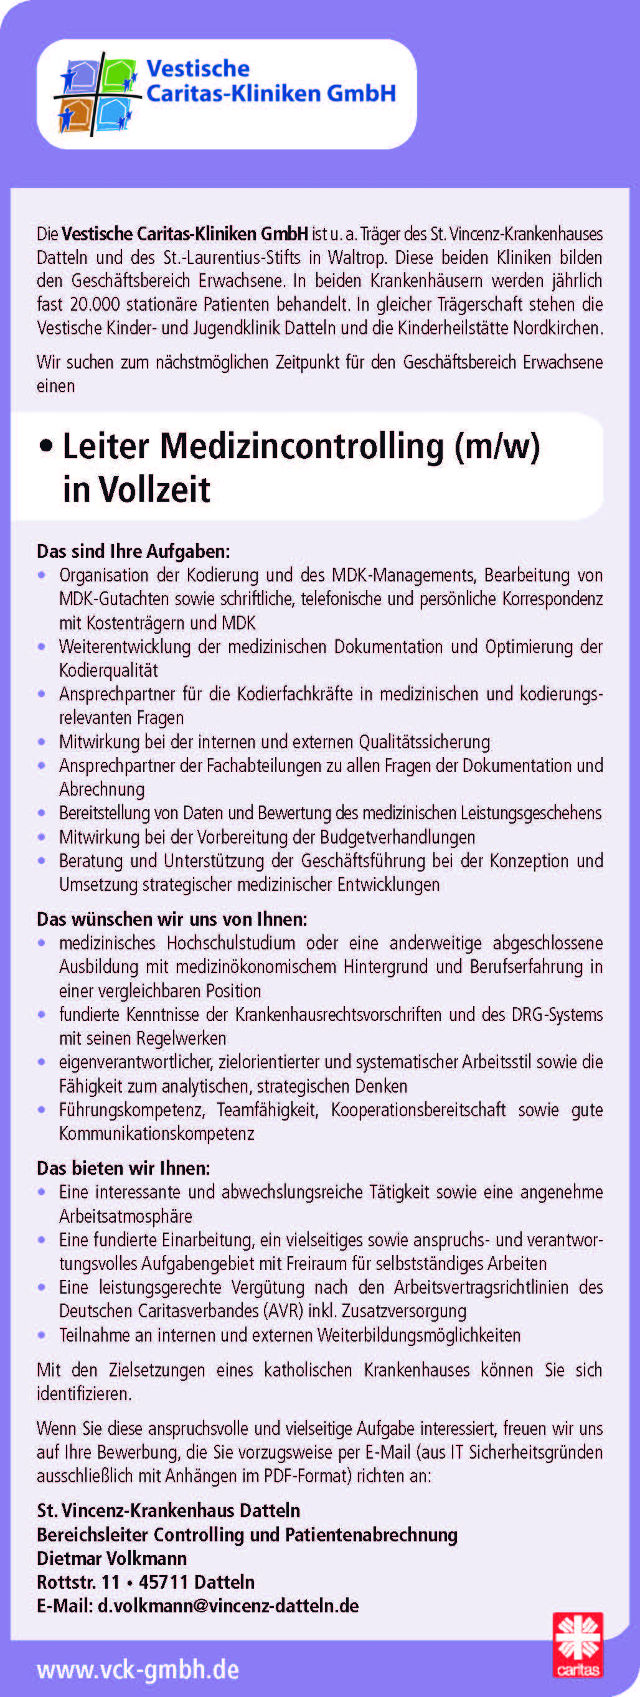 Vestische Caritas-Kliniken GmbH, Datteln: Leiter Medizincontrolling (m/w)